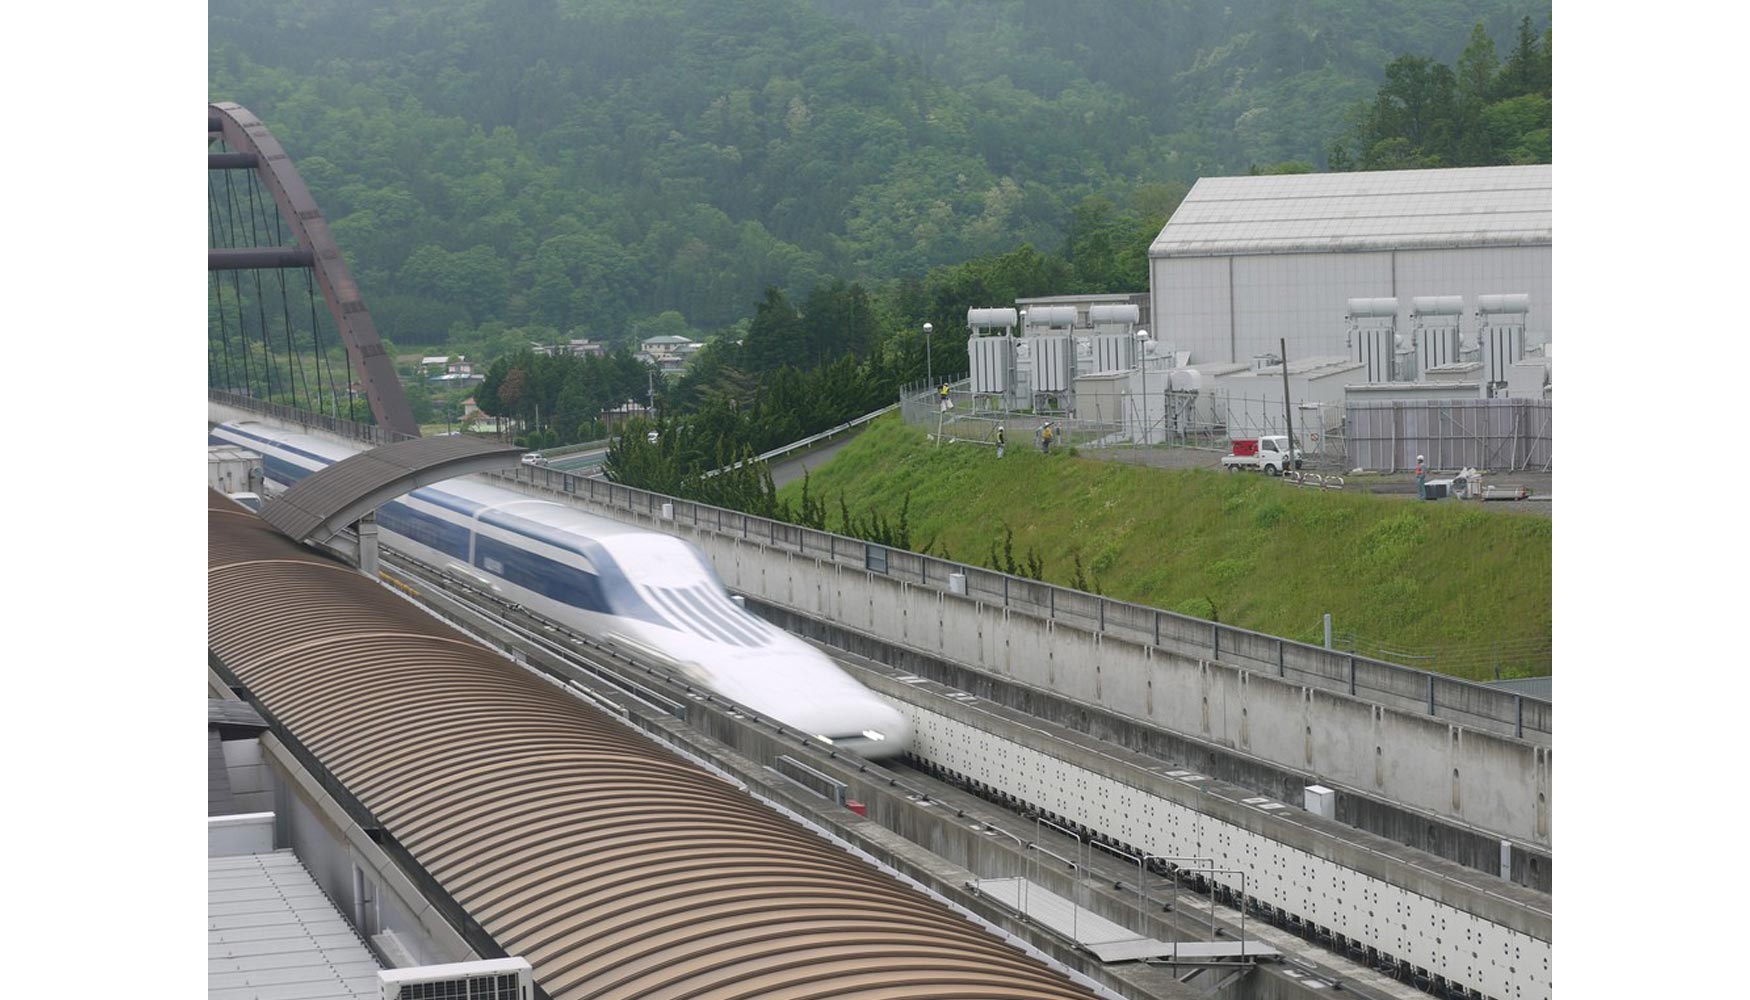 Los trenes maglev se posicionan como el futuro de los sistemas de alta velocidad, aunque ms a largo plazo